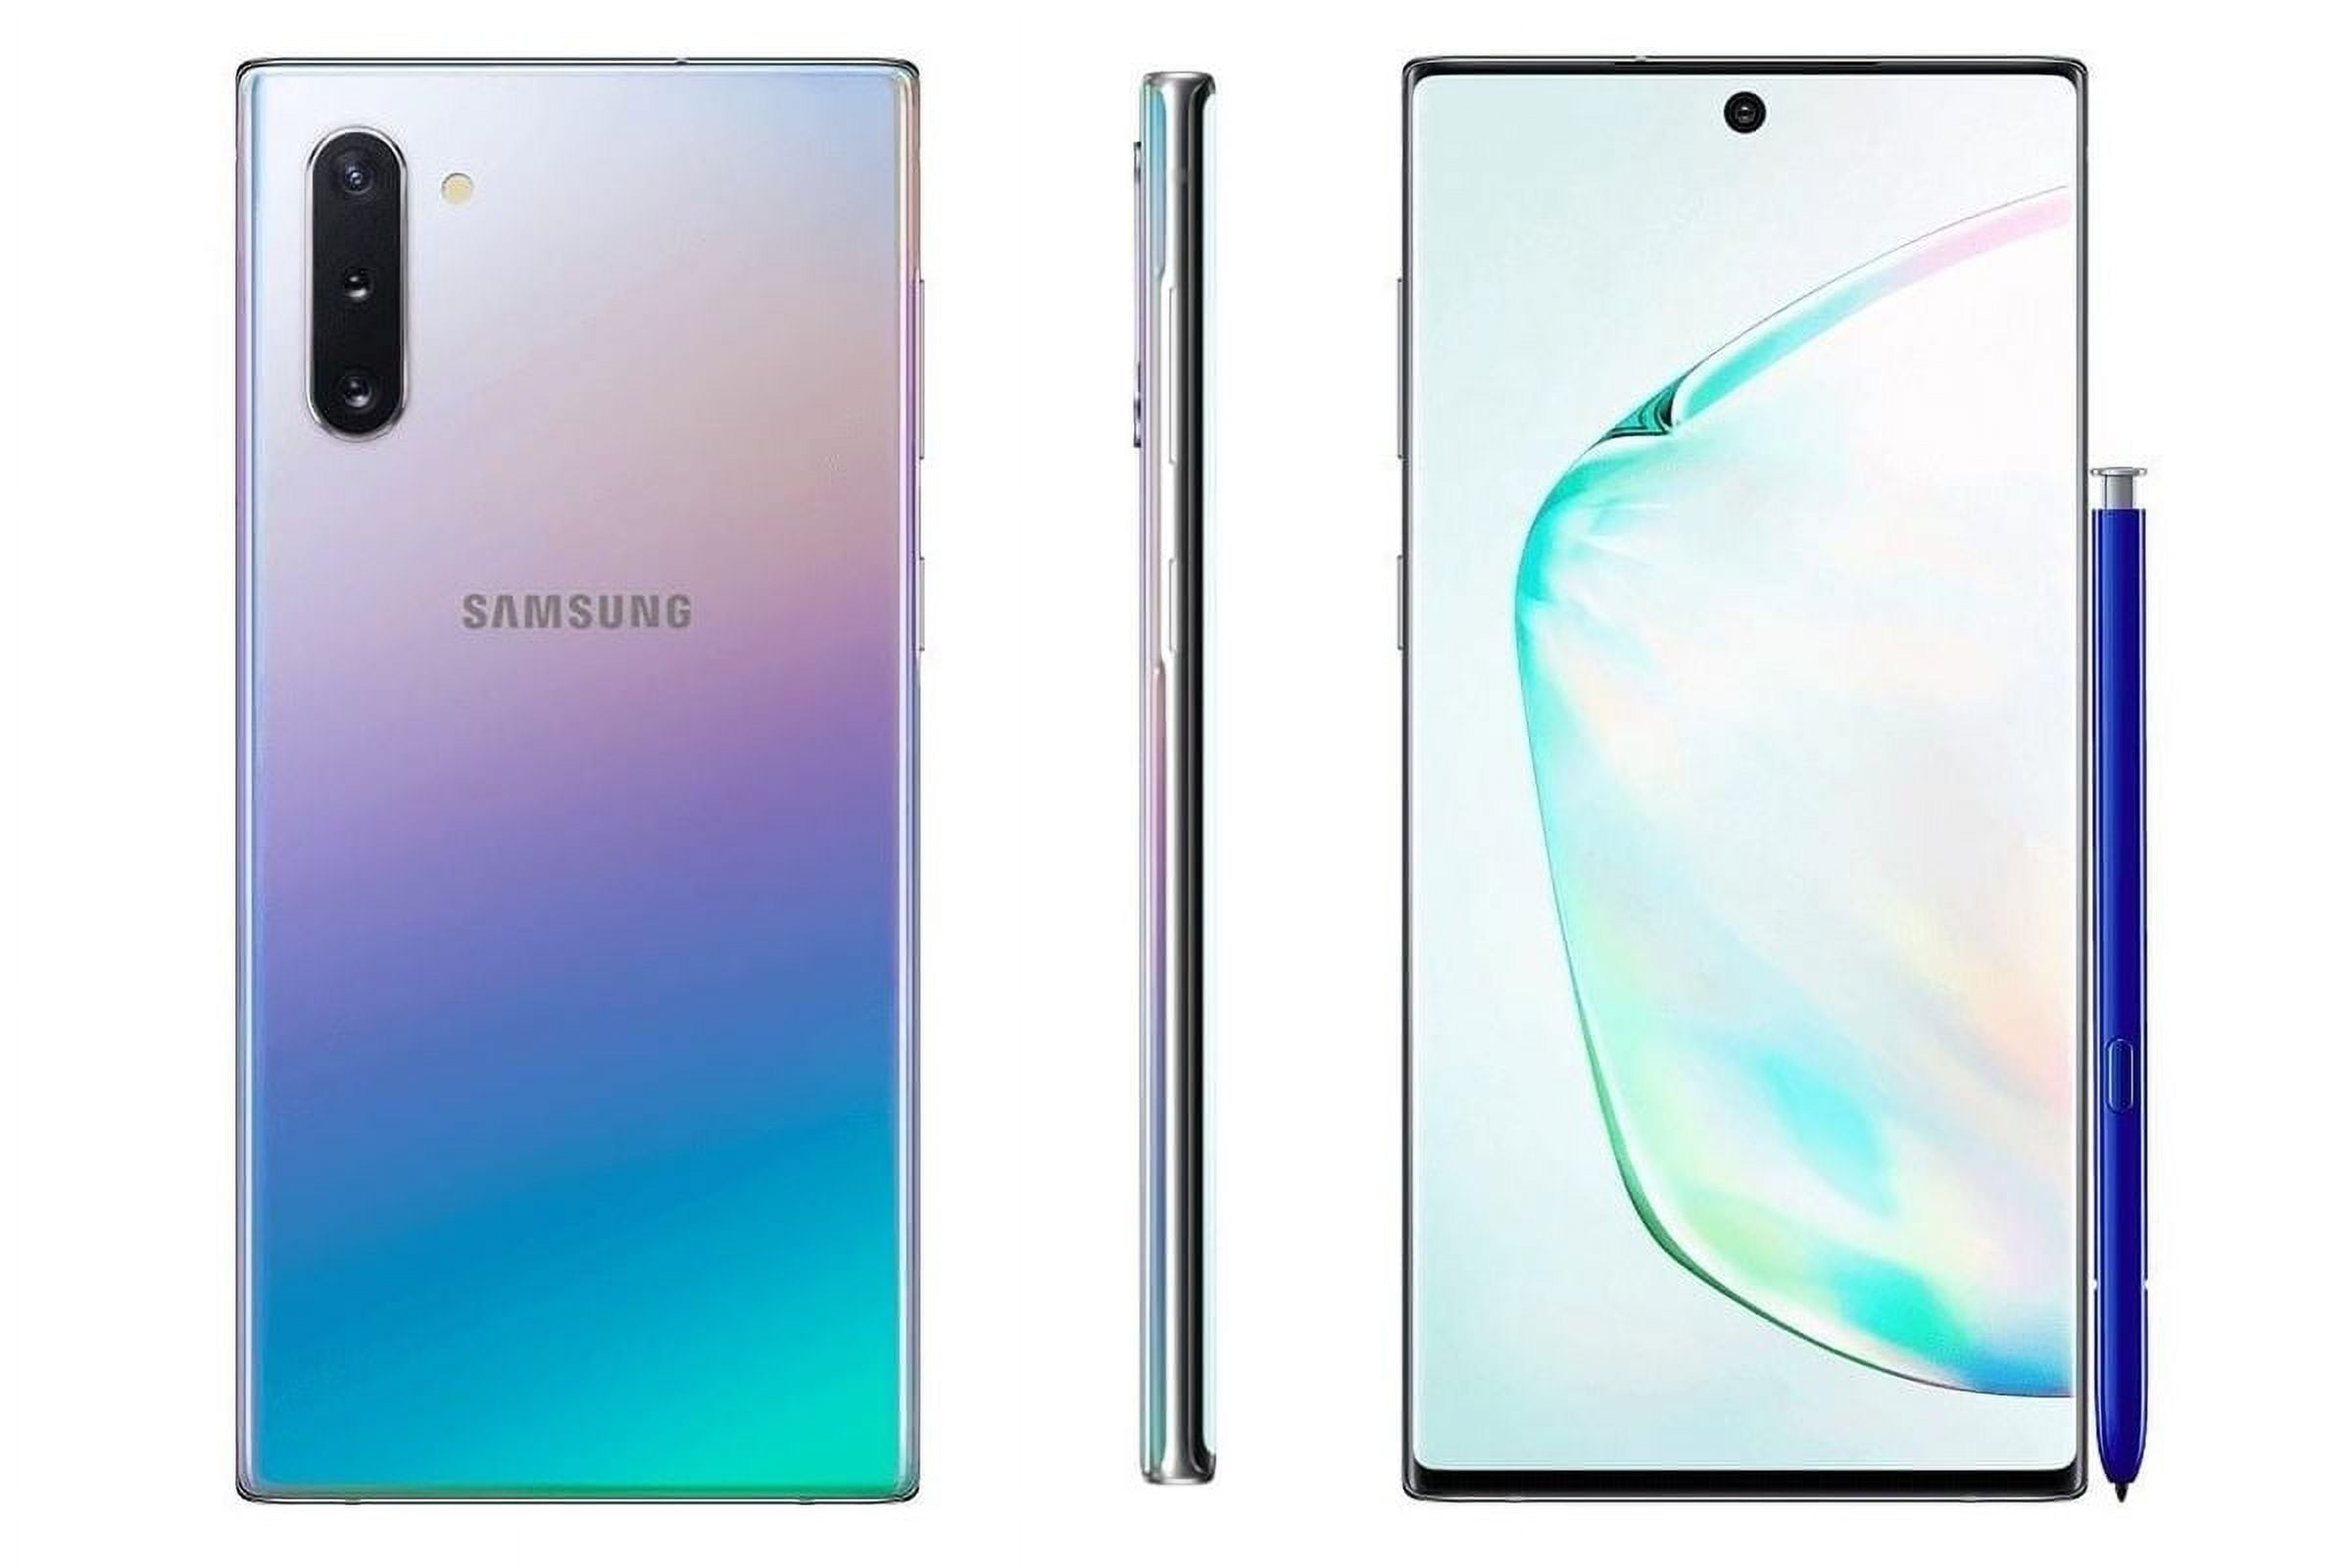  Samsung Galaxy Note 10 Plus N975U 256GB Factory Unlocked  Smartphone (Renewed) : Cell Phones & Accessories